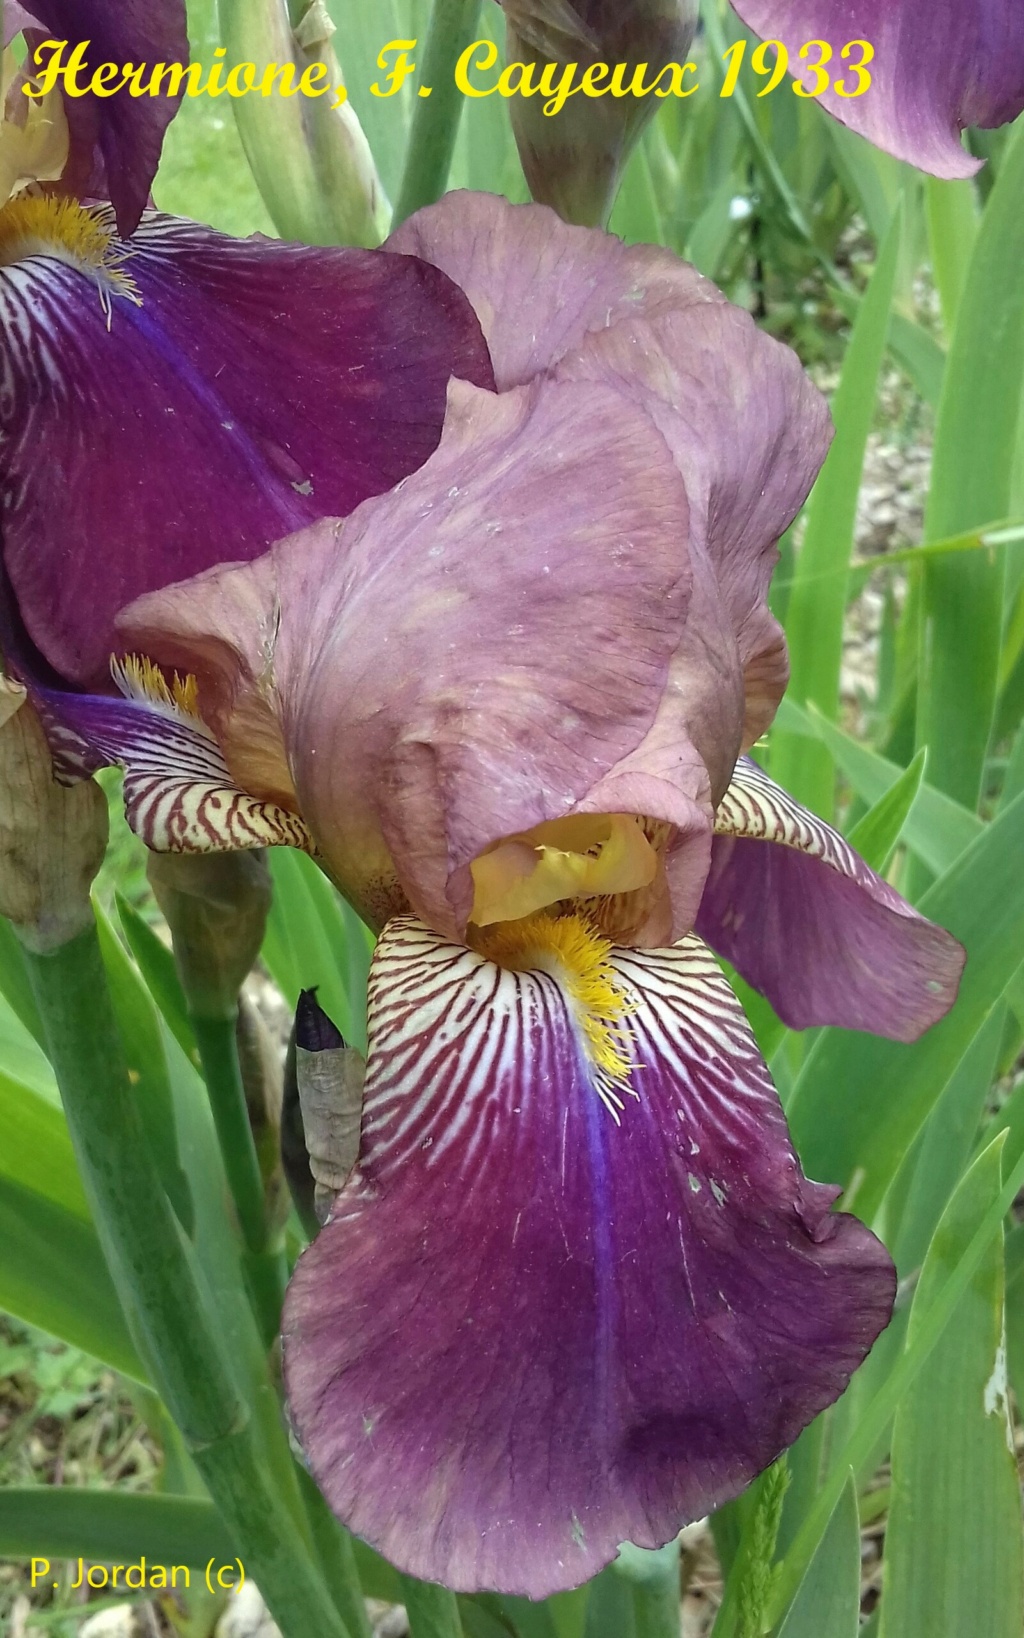 Les iris inédits : diploïdes horticoles français  Hermio10